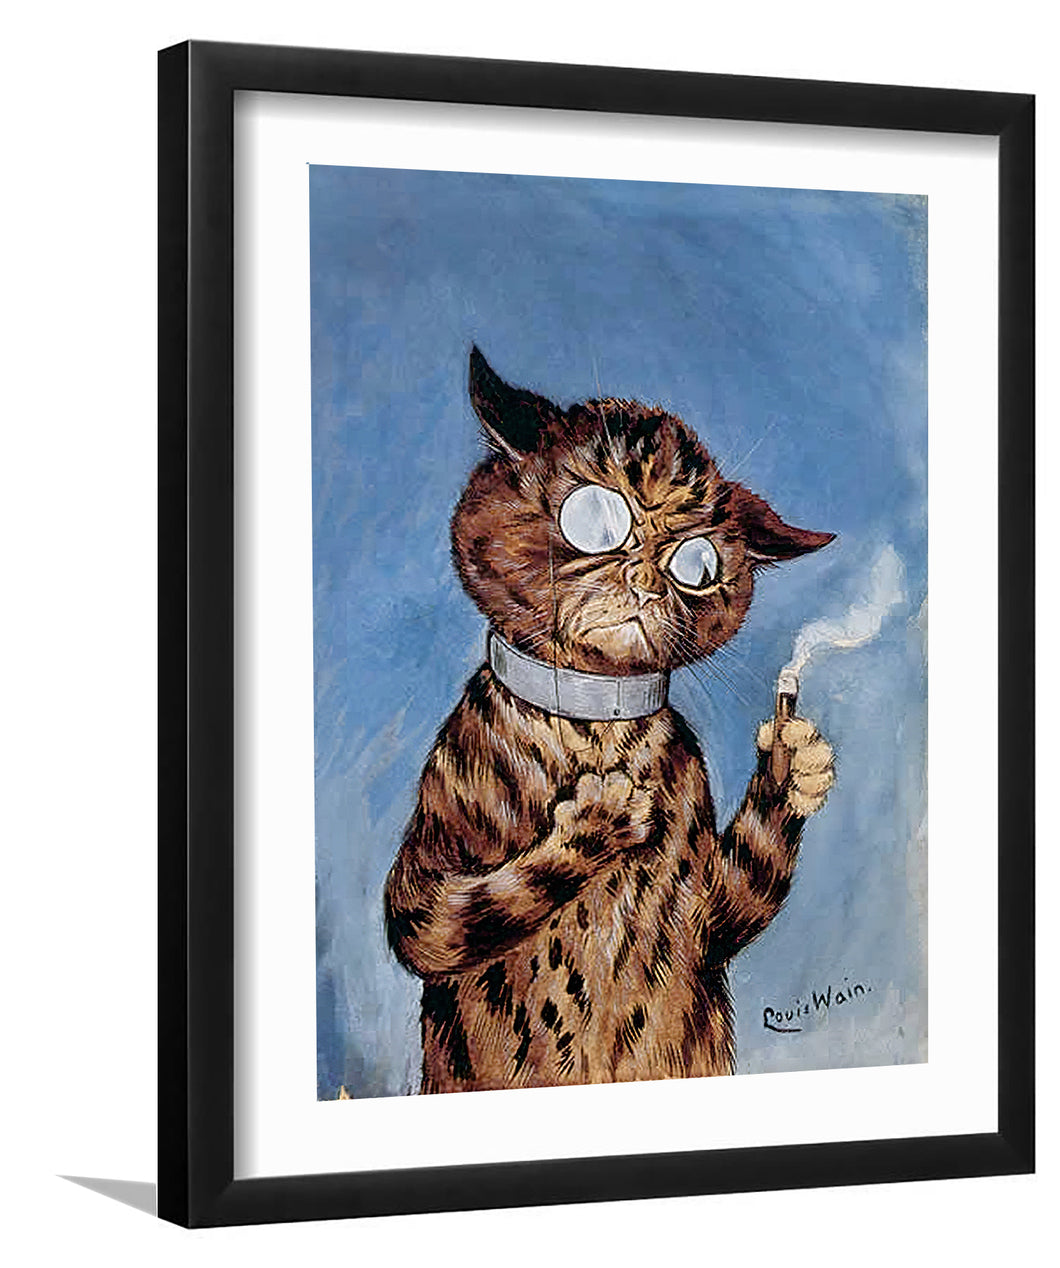 Cigar cat-Canvas art,Art print,Frame art